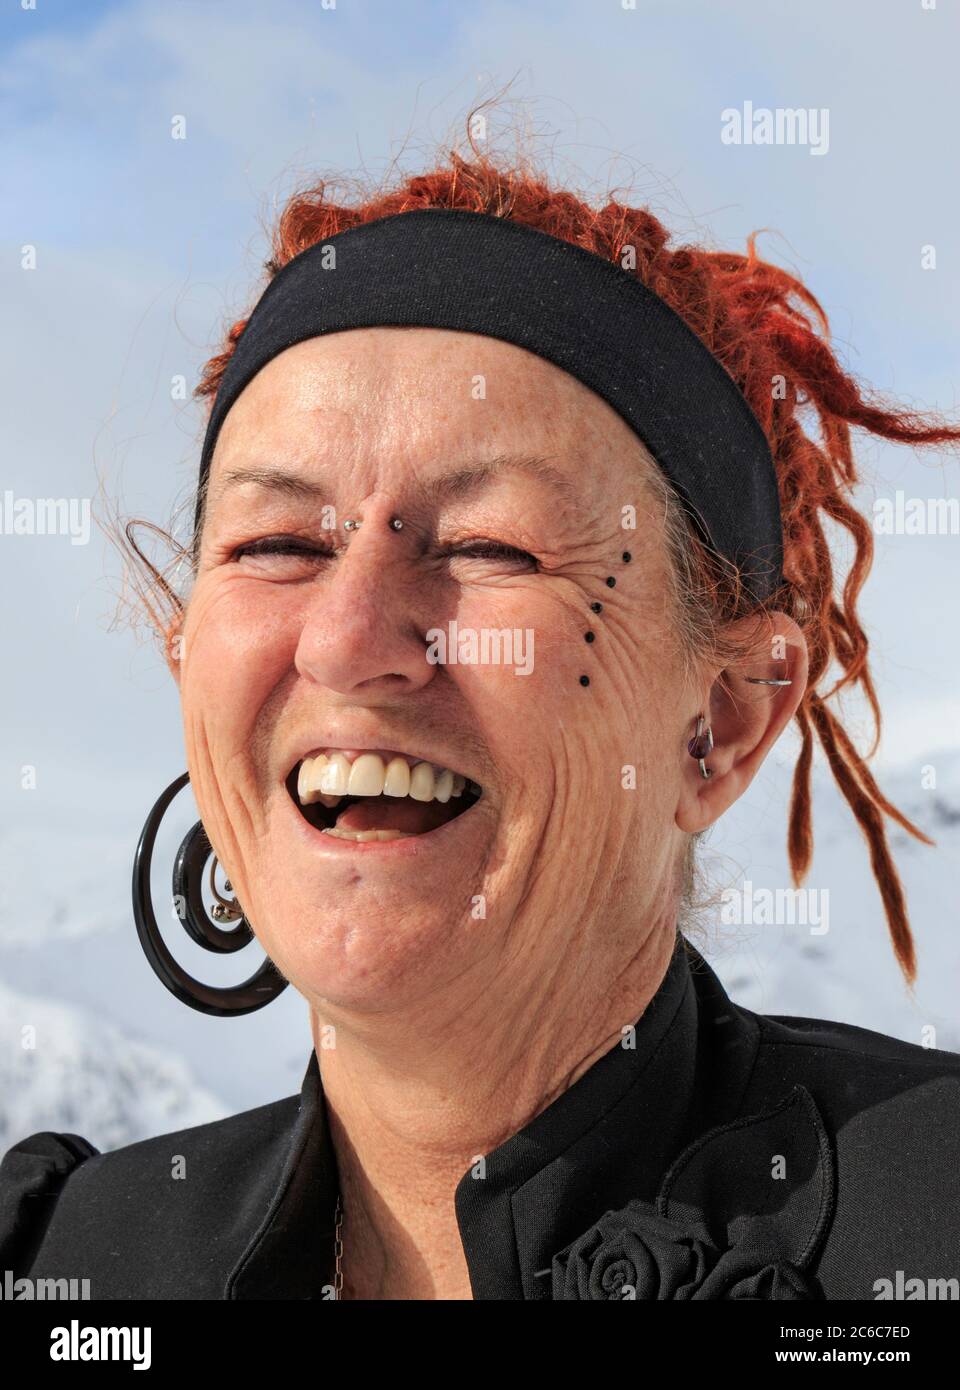 Frau mit interessanten Haaren, Tattoos und Piercings im Winter mit einem verschneiten Hintergrund. Stockfoto